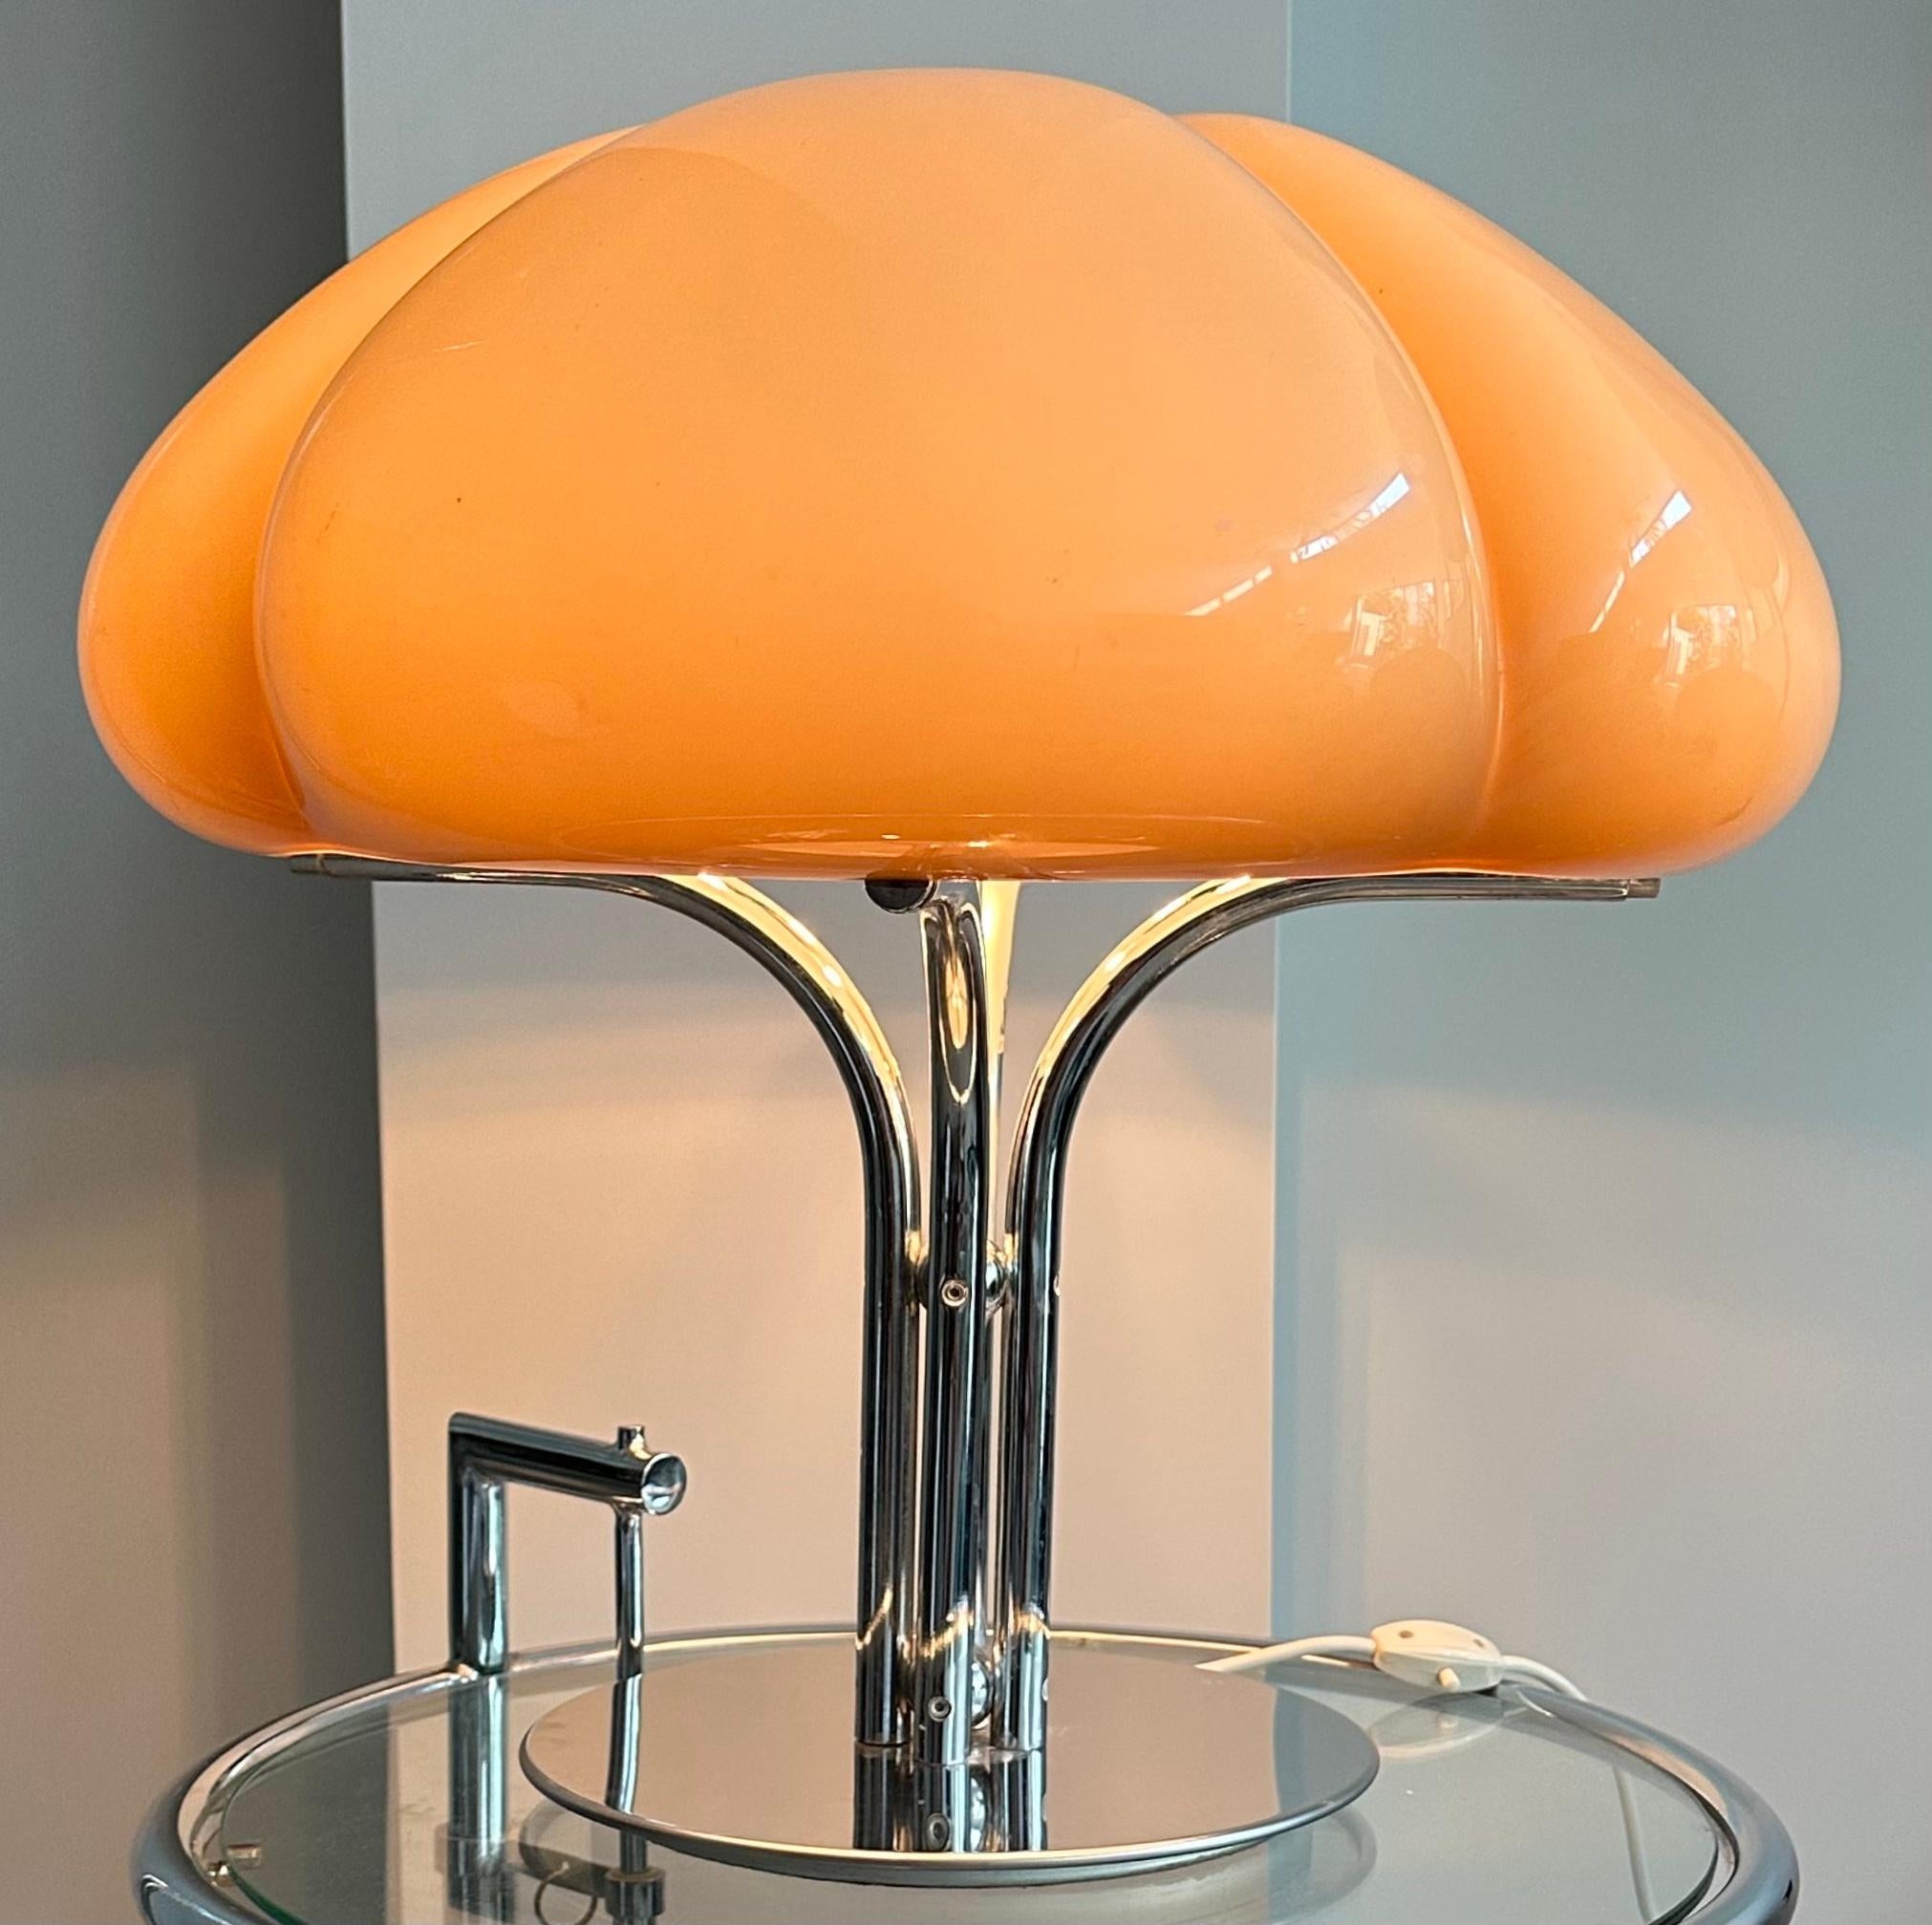 Polished 1970s Italian Quadrifoglio Harvey Guzzini Space Age Table Lamp by Gae Aulenti